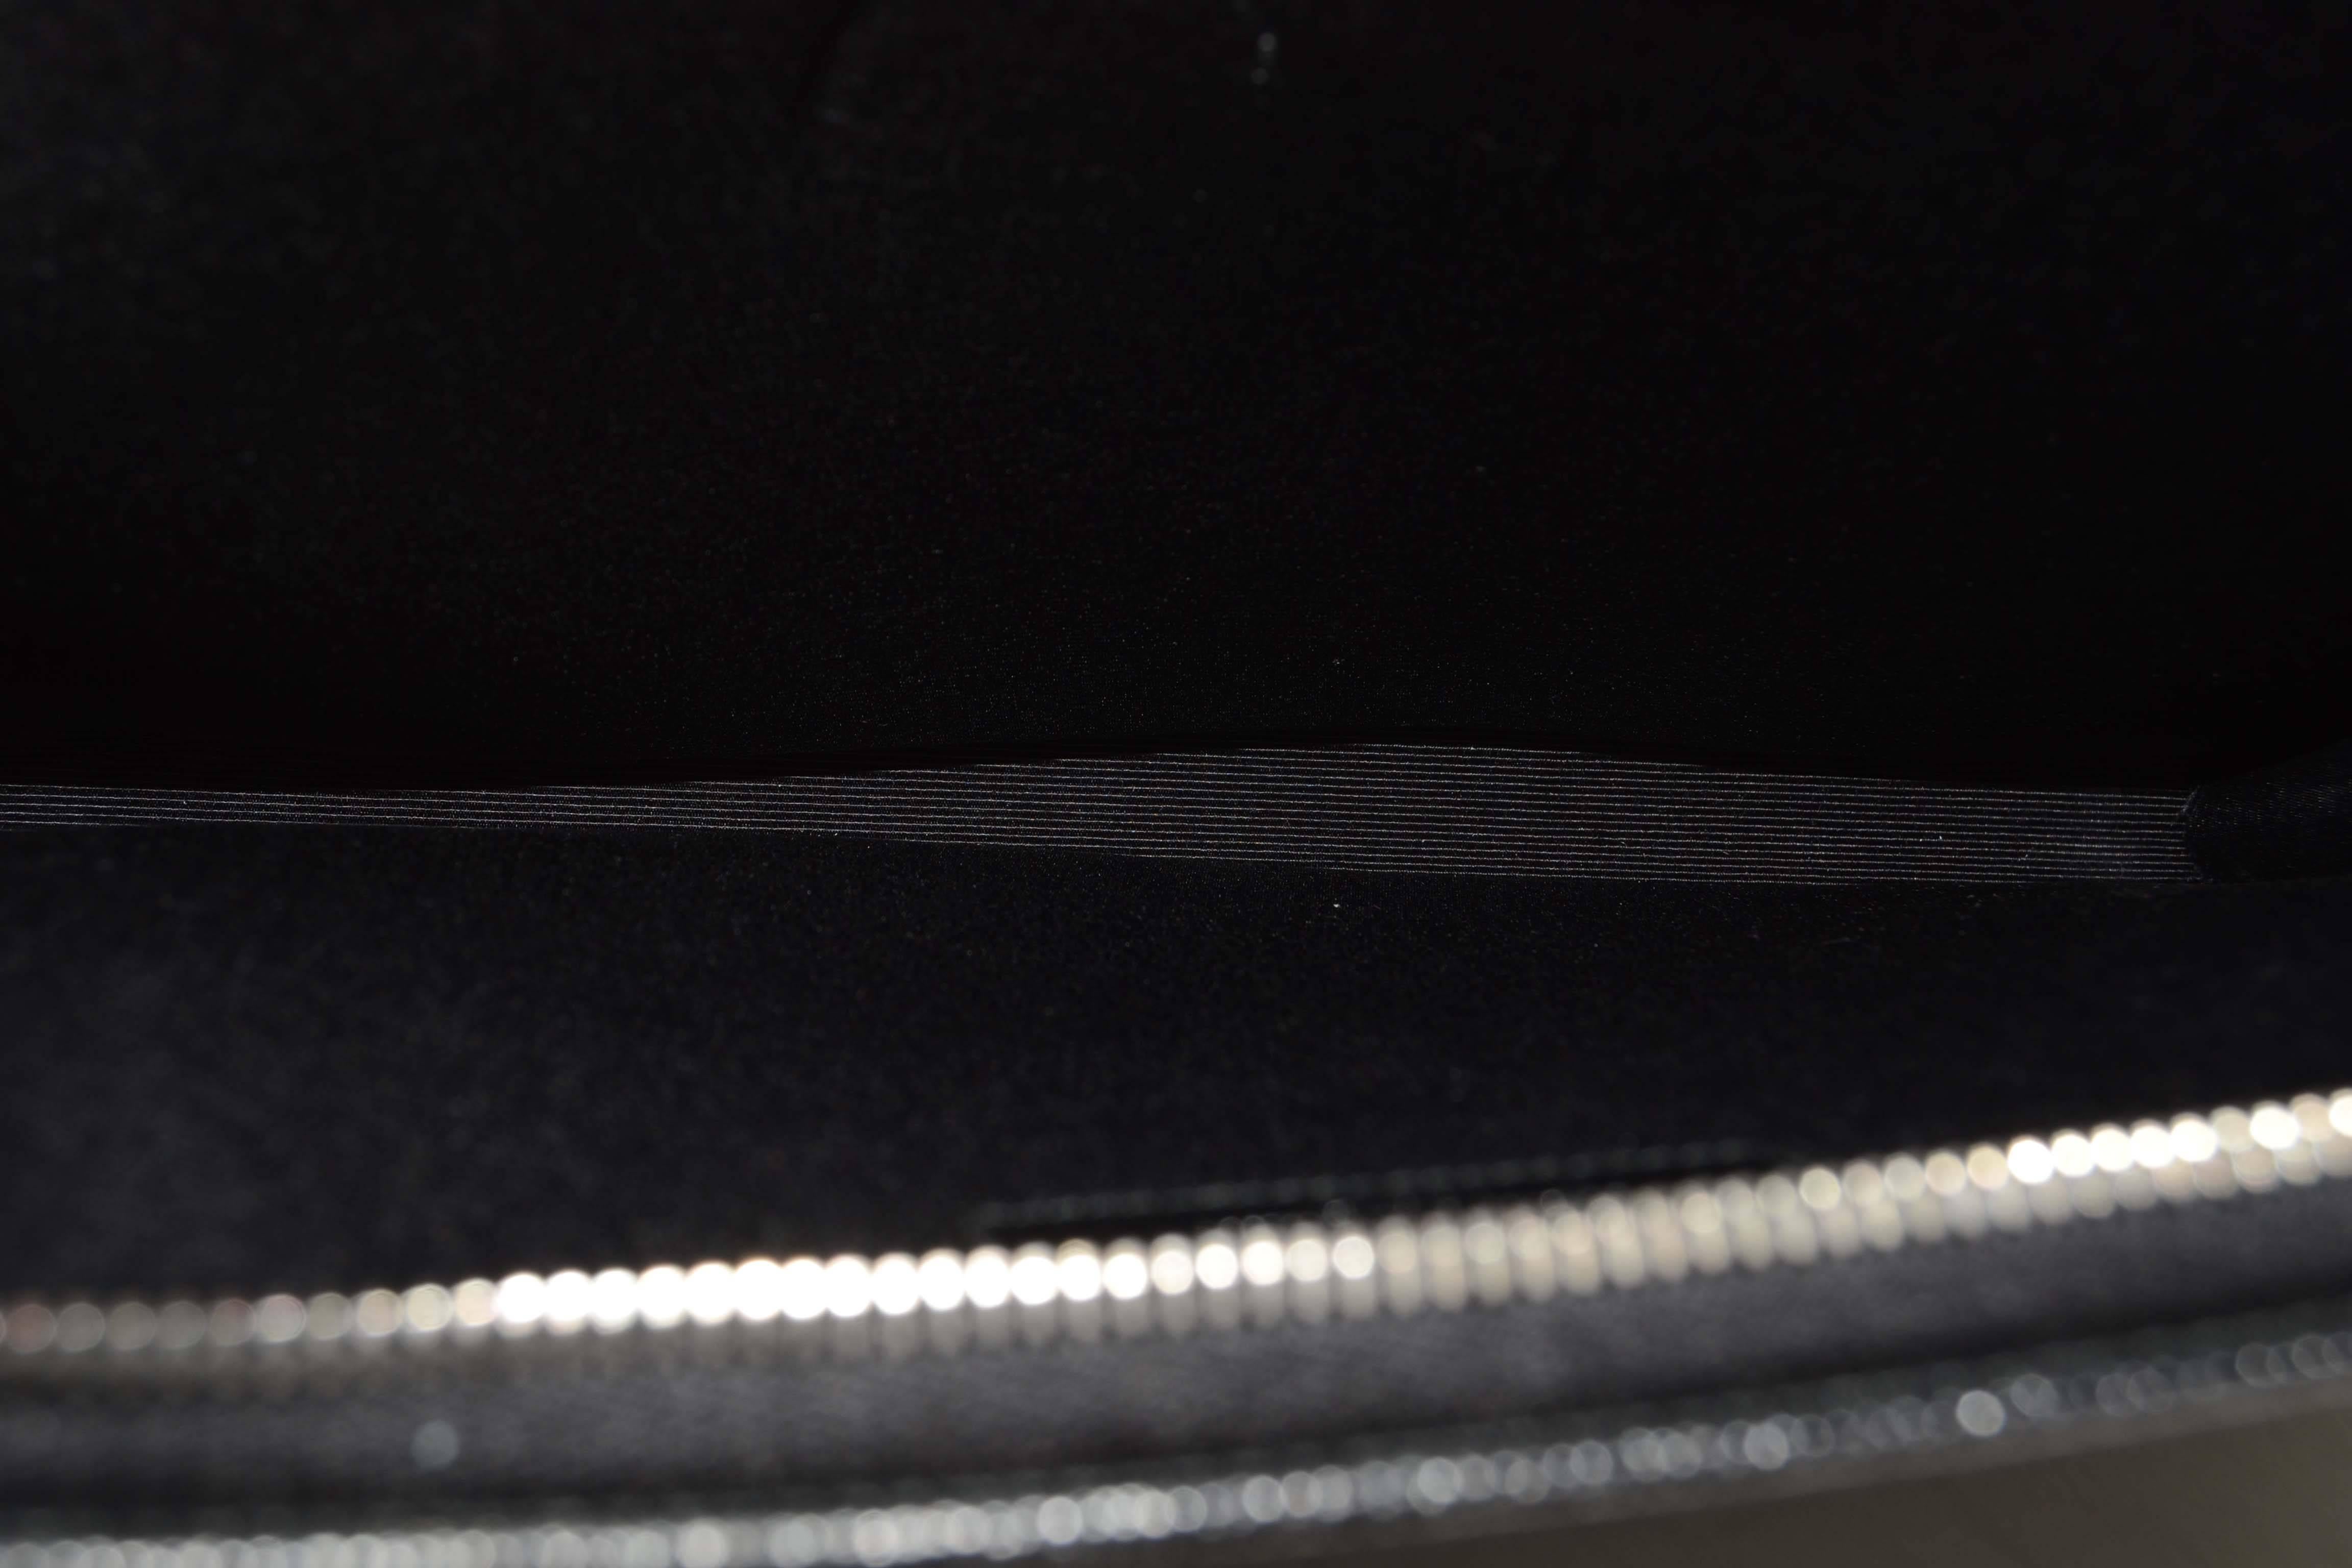 Saint Laurent Black Leather iPad Case/Clutch Bag rt $560 2